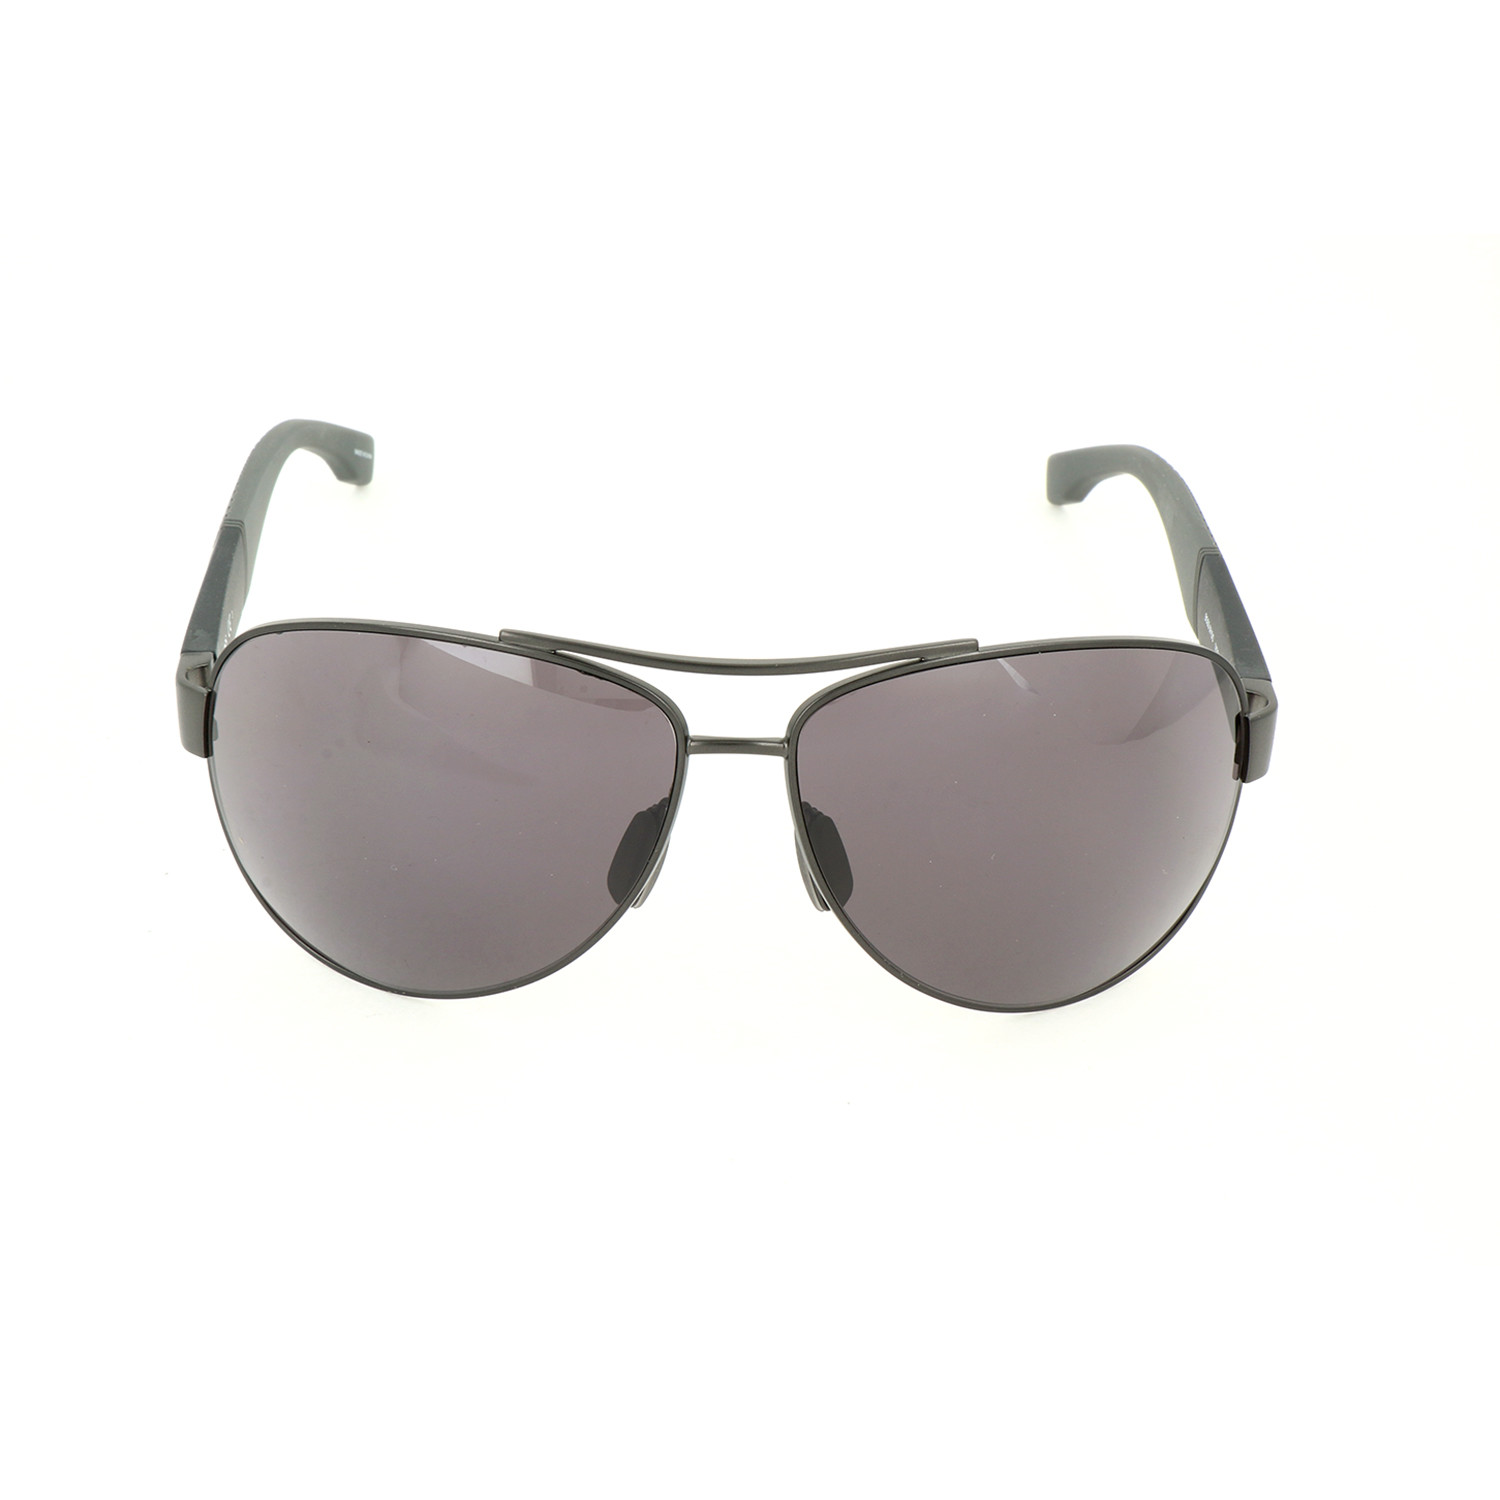 Men's 0915 Sunglasses // Gray + Black - Hugo Boss - Touch of Modern